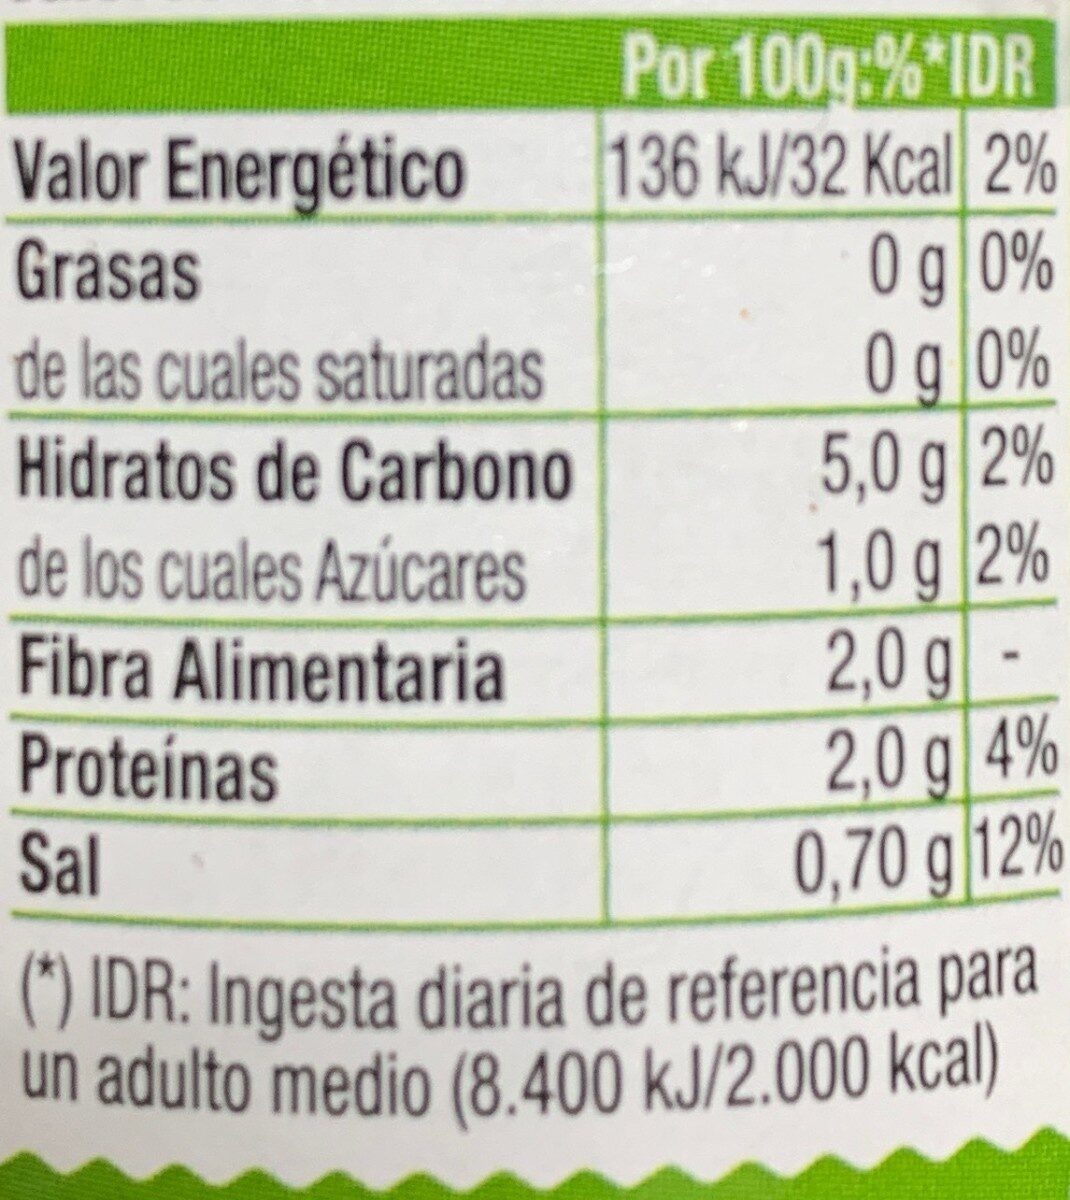 Corazones de alcachofa - Medianos - Receta Traducional - Información nutricional